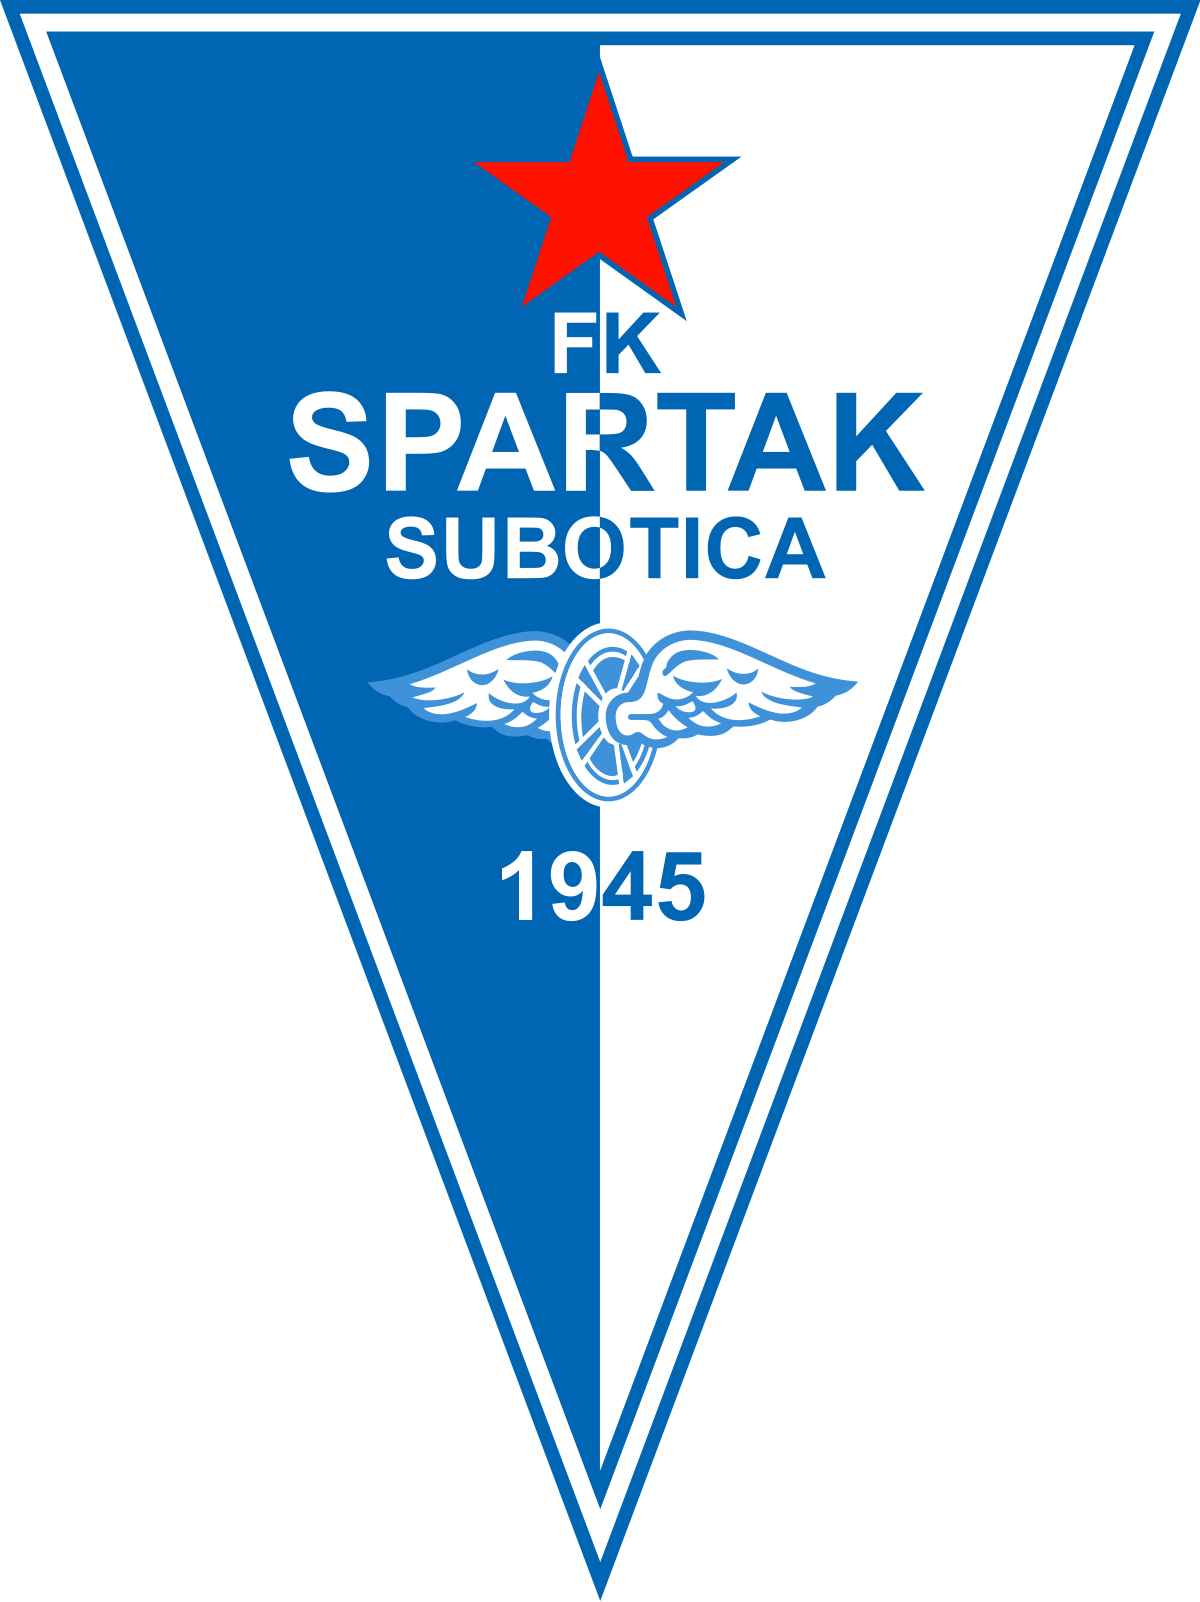 Sp.Subotica-Macva 23 luglio: match valido per la prima giornata del campionato serbo. Chi otterrà i primi 3 punti in campionato?